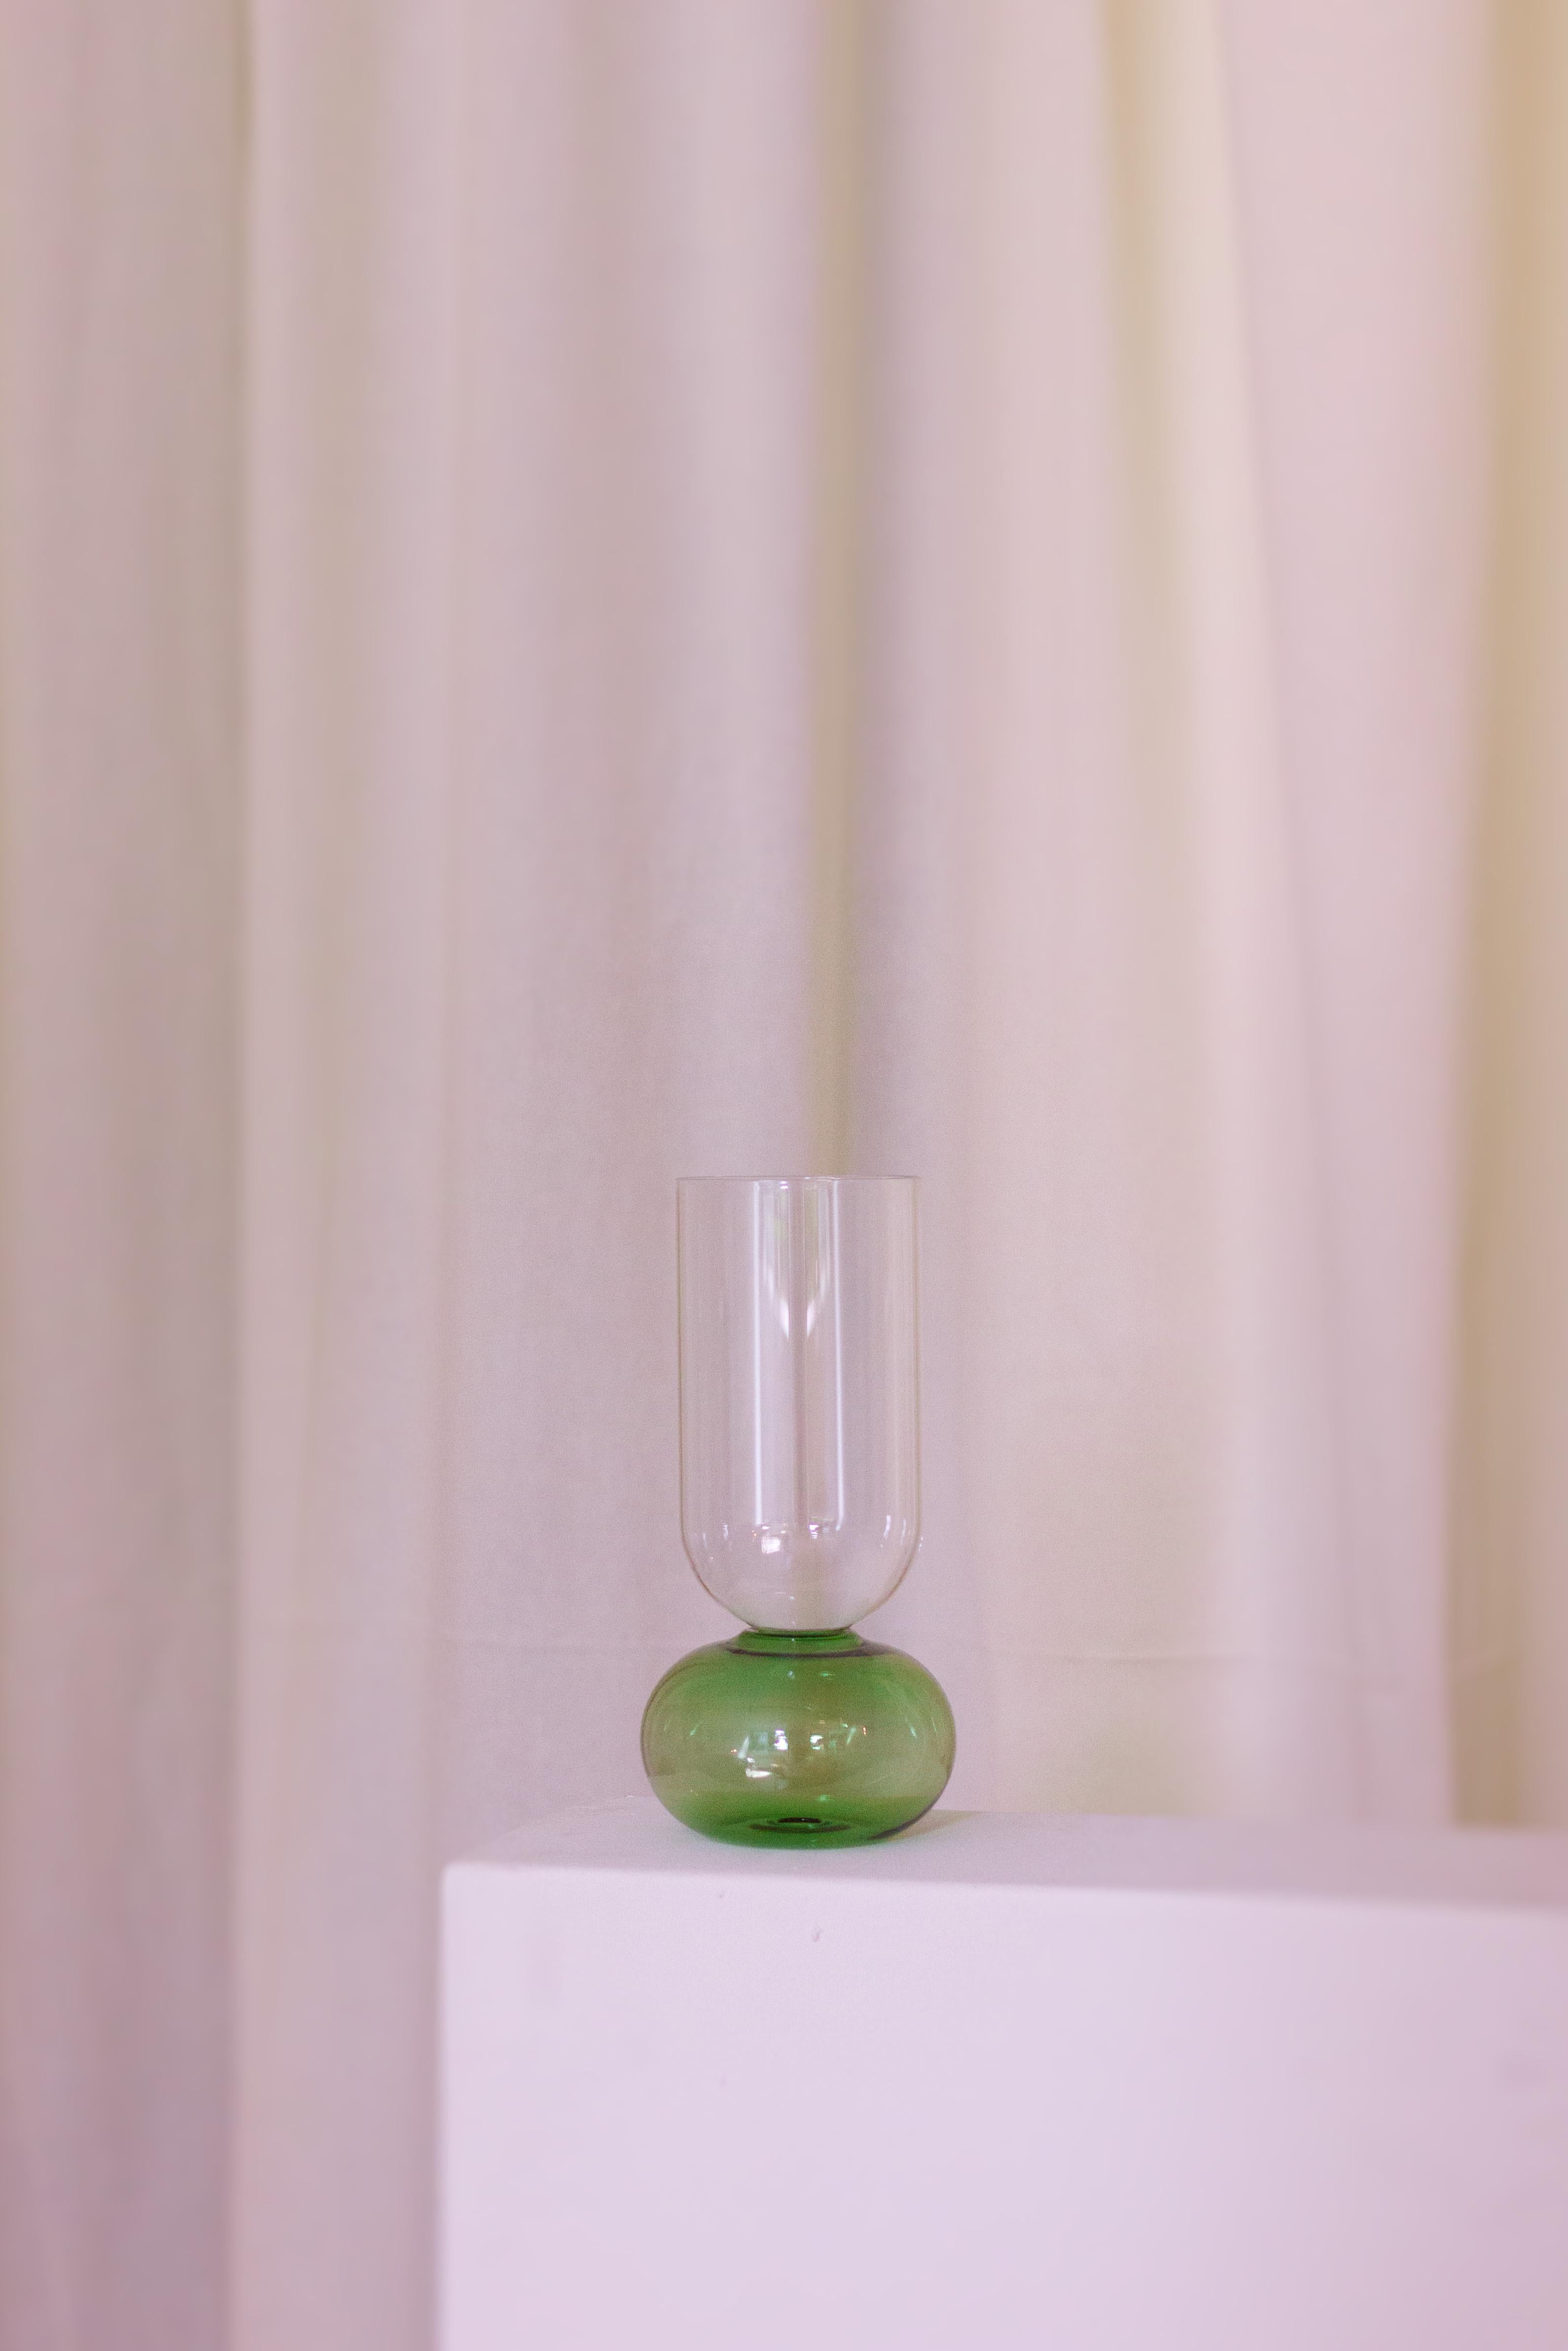 Ce charmant vase fabriqué à la main en cristal fin est un écrin de volumes purs. Sa silhouette élégante est composée d'une base sphérique bleue soutenant le corps cylindrique transparent. Fabriqué selon les techniques traditionnelles du XIXe siècle,